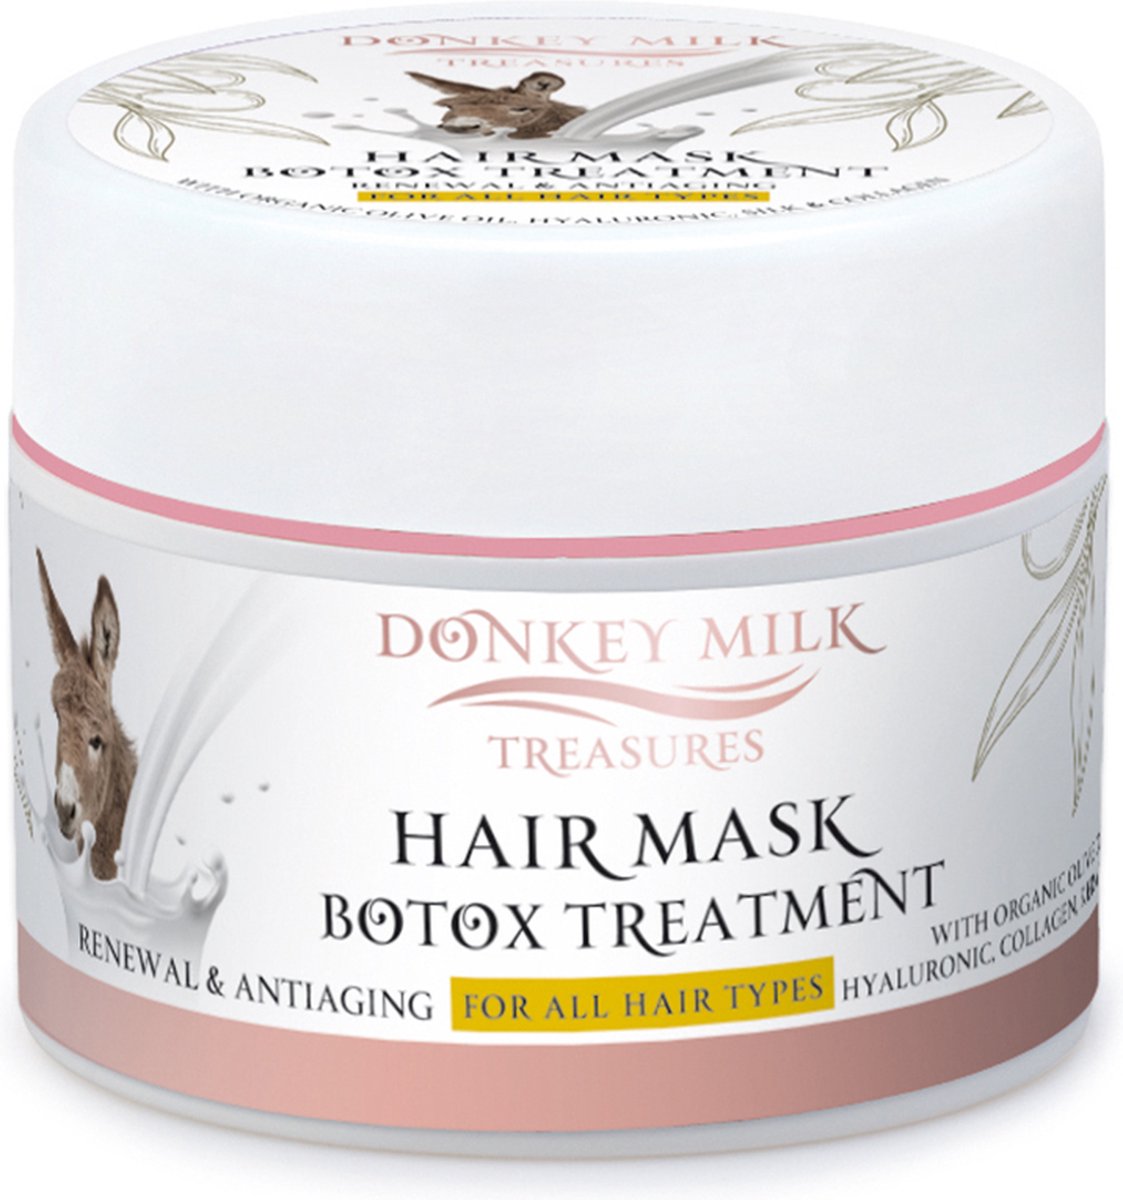 Pharmaid Donkey Milk Treasures Hair Mask Botox Treatment 200ml | Luxe Haarmasker voor Alle Haartypes